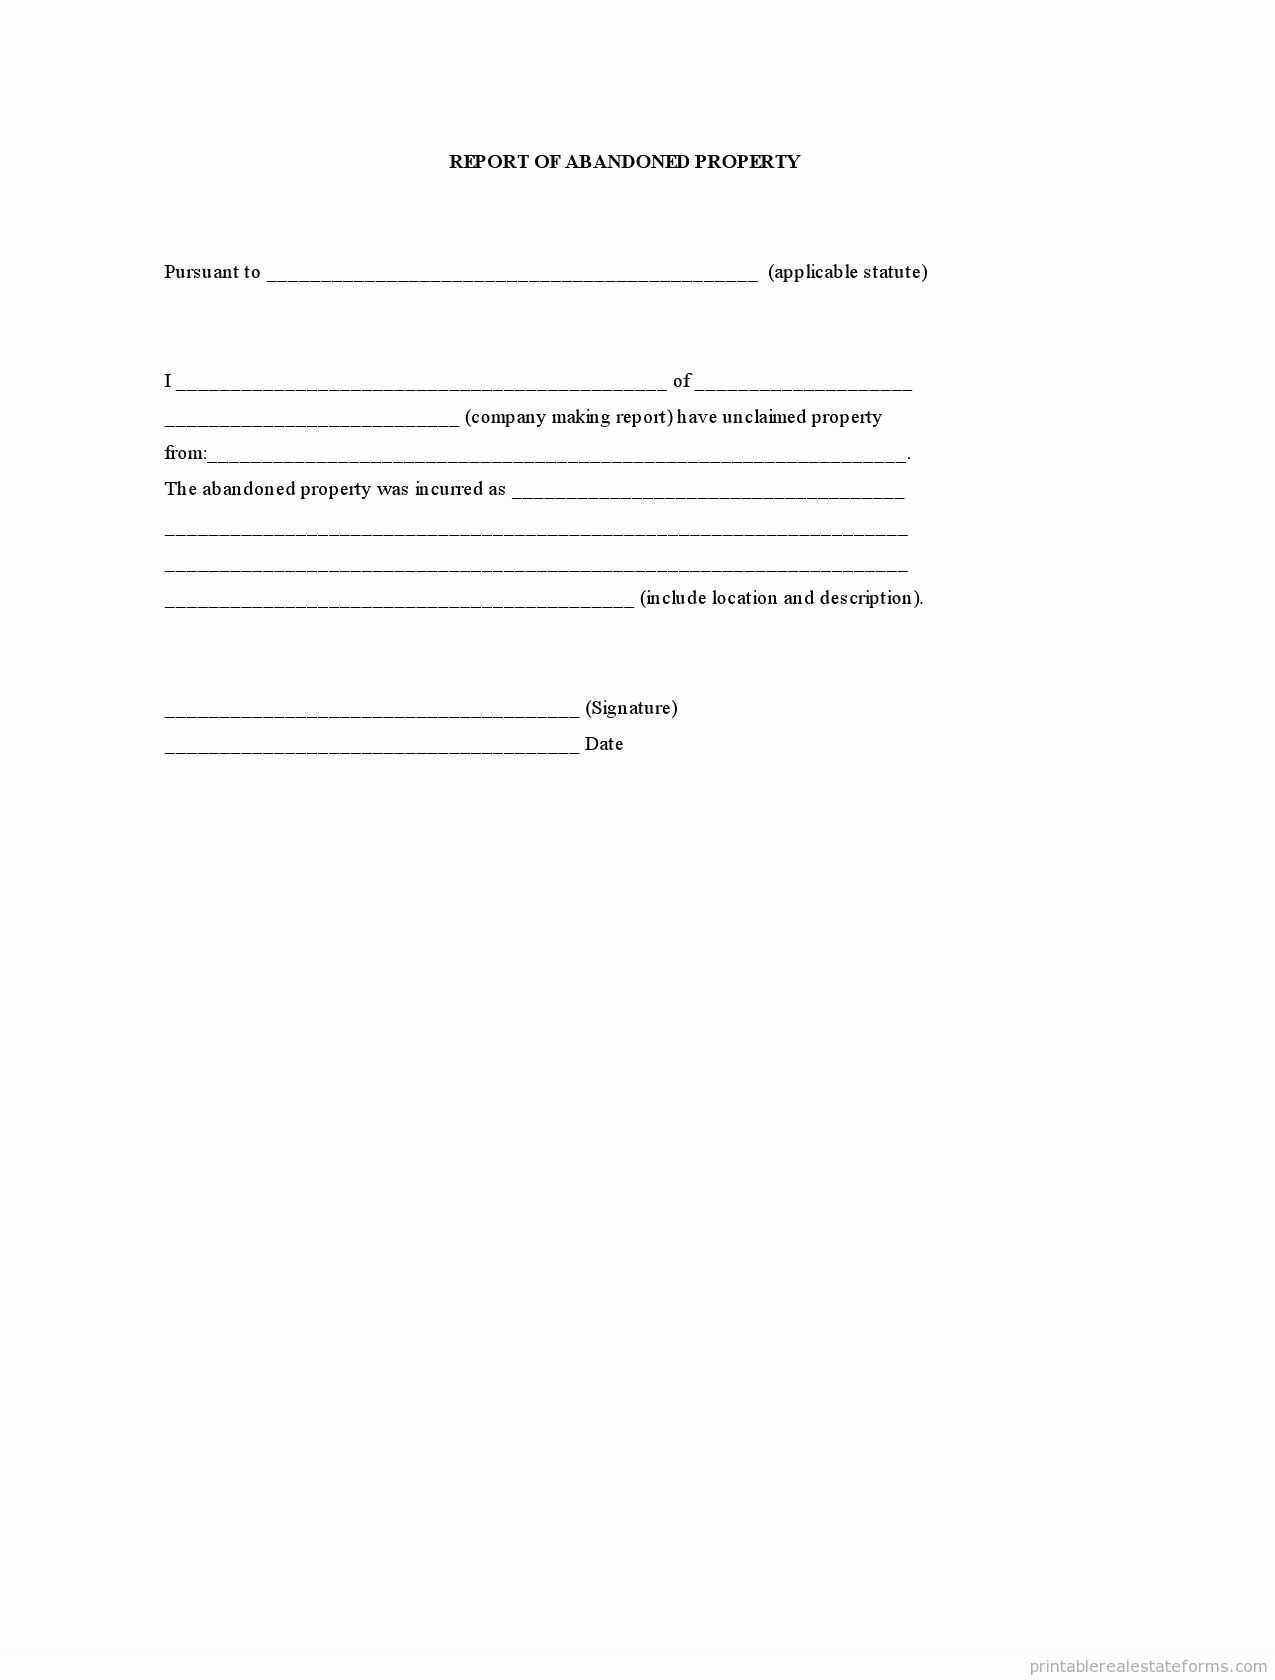 Drug Education Worksheets together with Printable Resume Worksheet Myacereporter